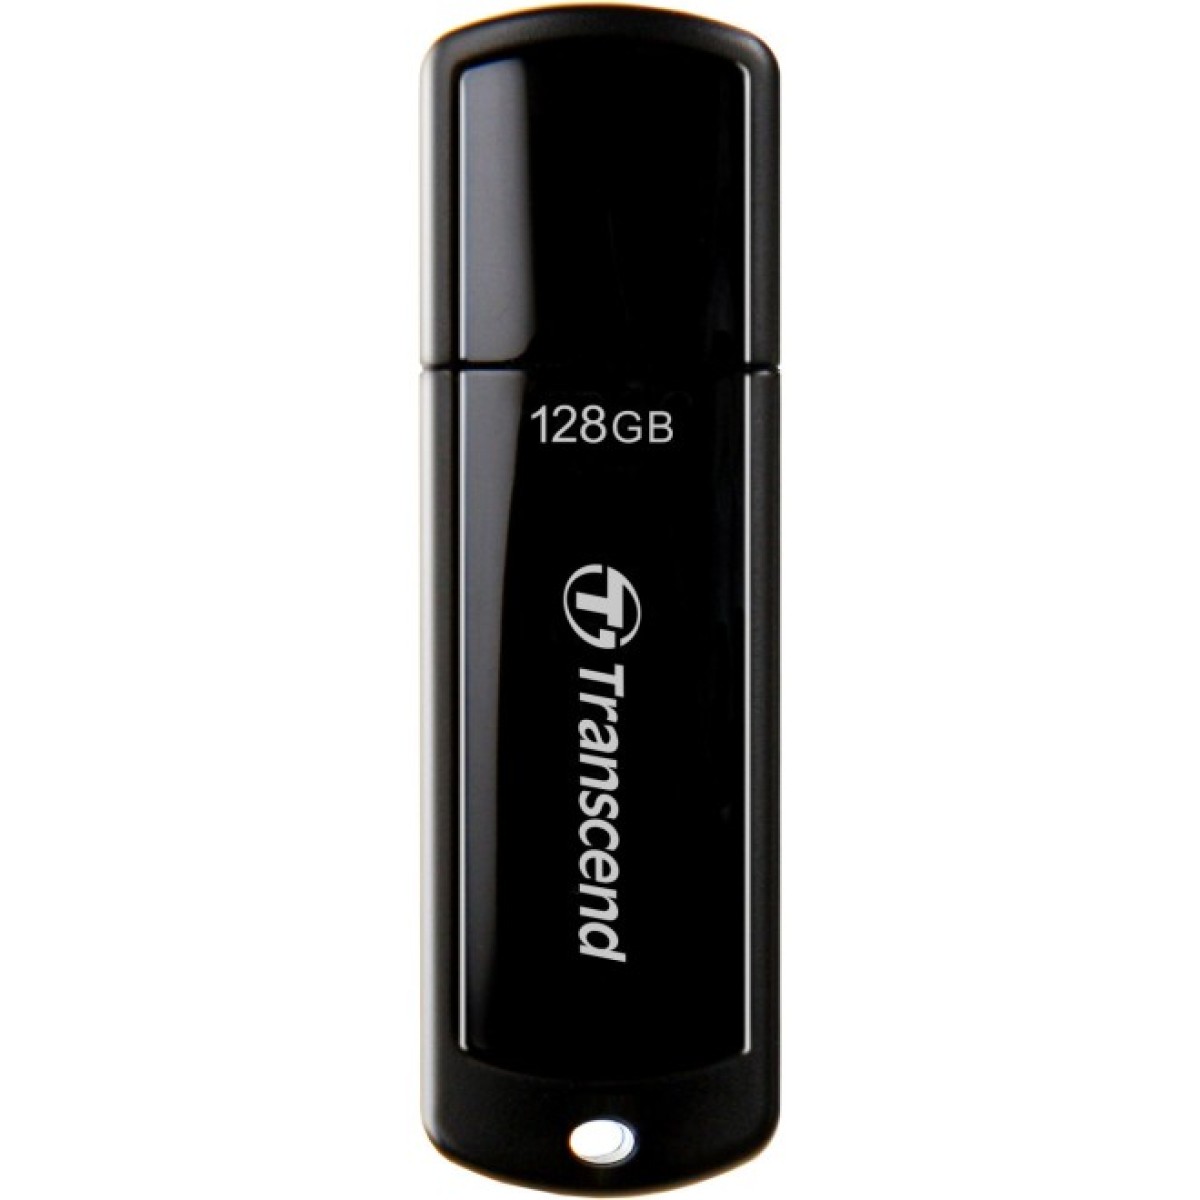 USB флеш накопитель Transcend 128GB JetFlash 700 USB 3.0 (TS128GJF700) 256_256.jpg